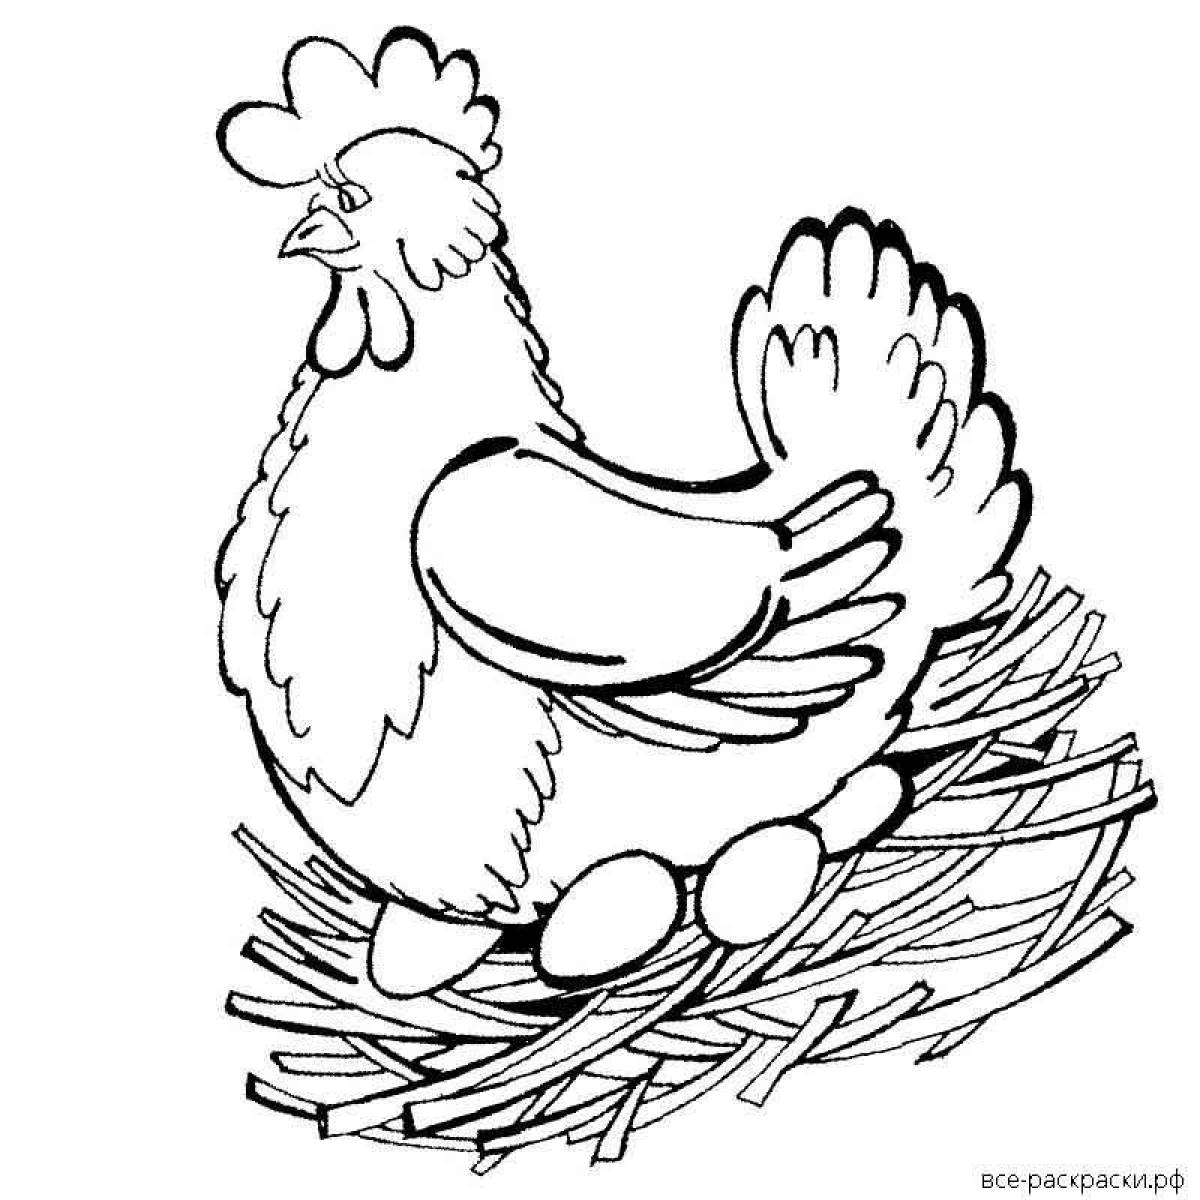 Fun coloring chicken